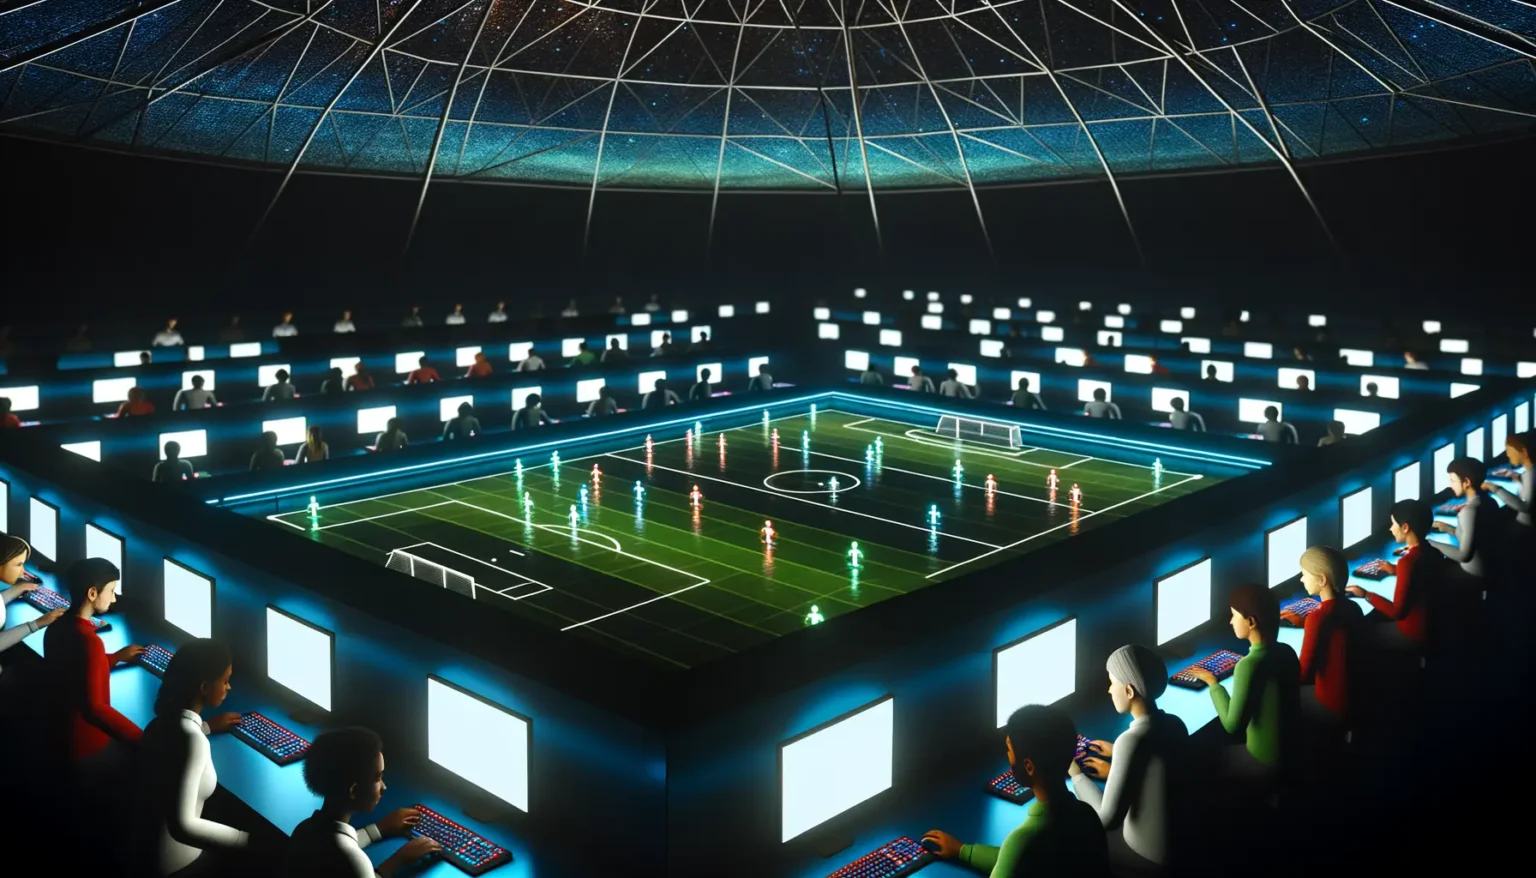 Eine futuristische Darstellung eines Fußballstadions bei Nacht mit holographischer Spielfeldprojektion und mehreren Ebenen von Zuschauern, die an beleuchteten Konsolen sitzen. Über dem Spielfeld spannt sich eine kuppelförmige, sternenhimmelähnliche Konstruktion. Die Szene kombiniert Elemente des Sports mit hochmoderner Technologie und Cyber-Ambiente.